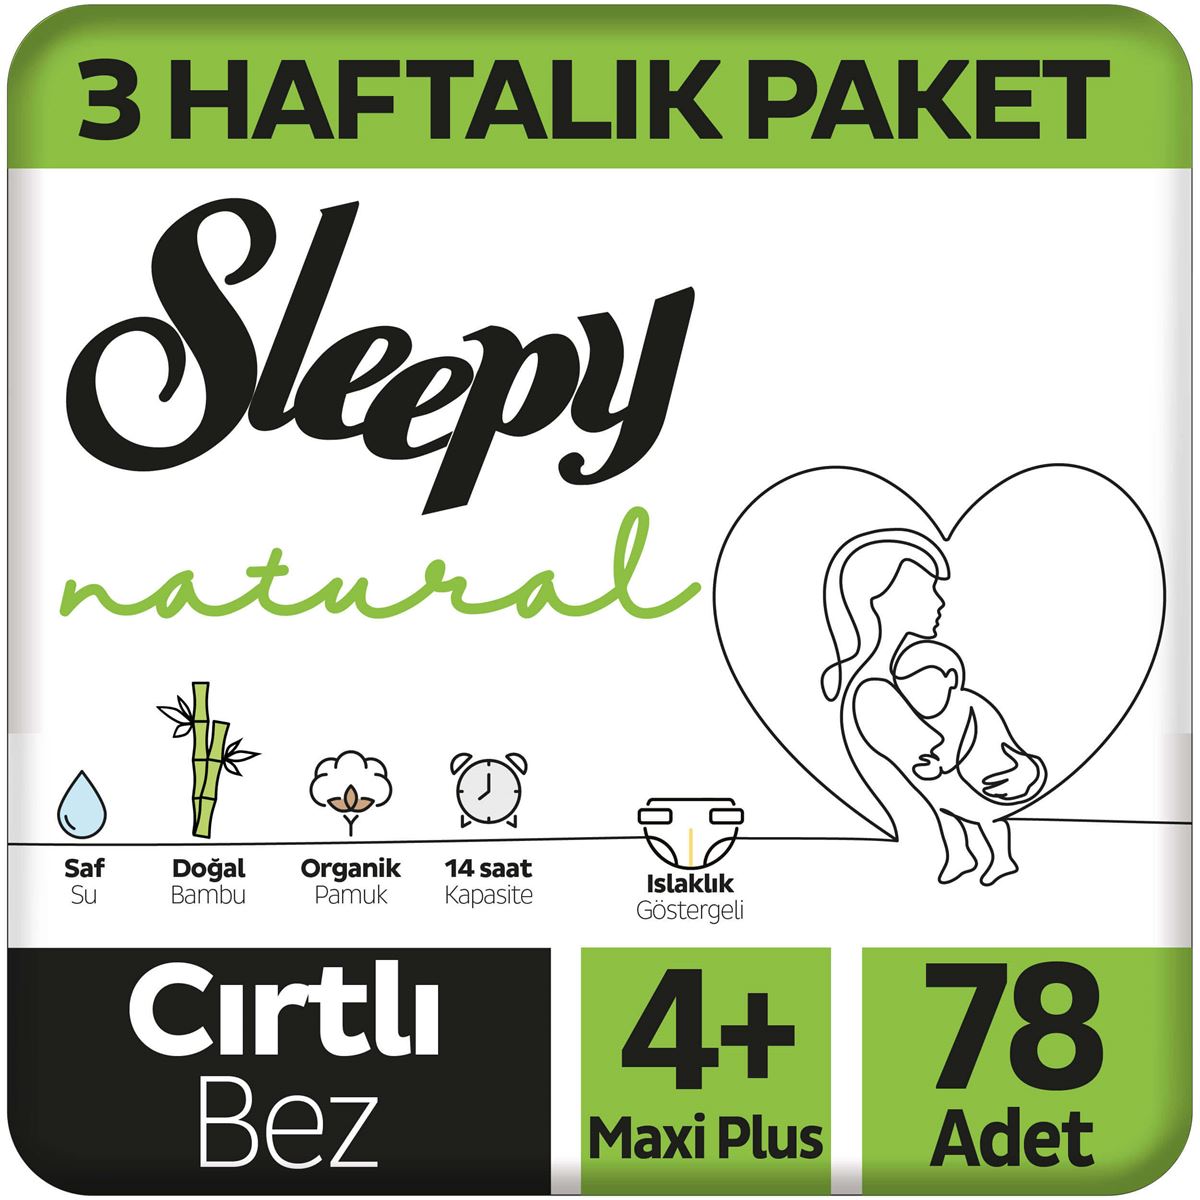 Sleepy Natural 3 Haftalık Paket Bebek Bezi 4+ Numara Maxi Plus 78 Adet